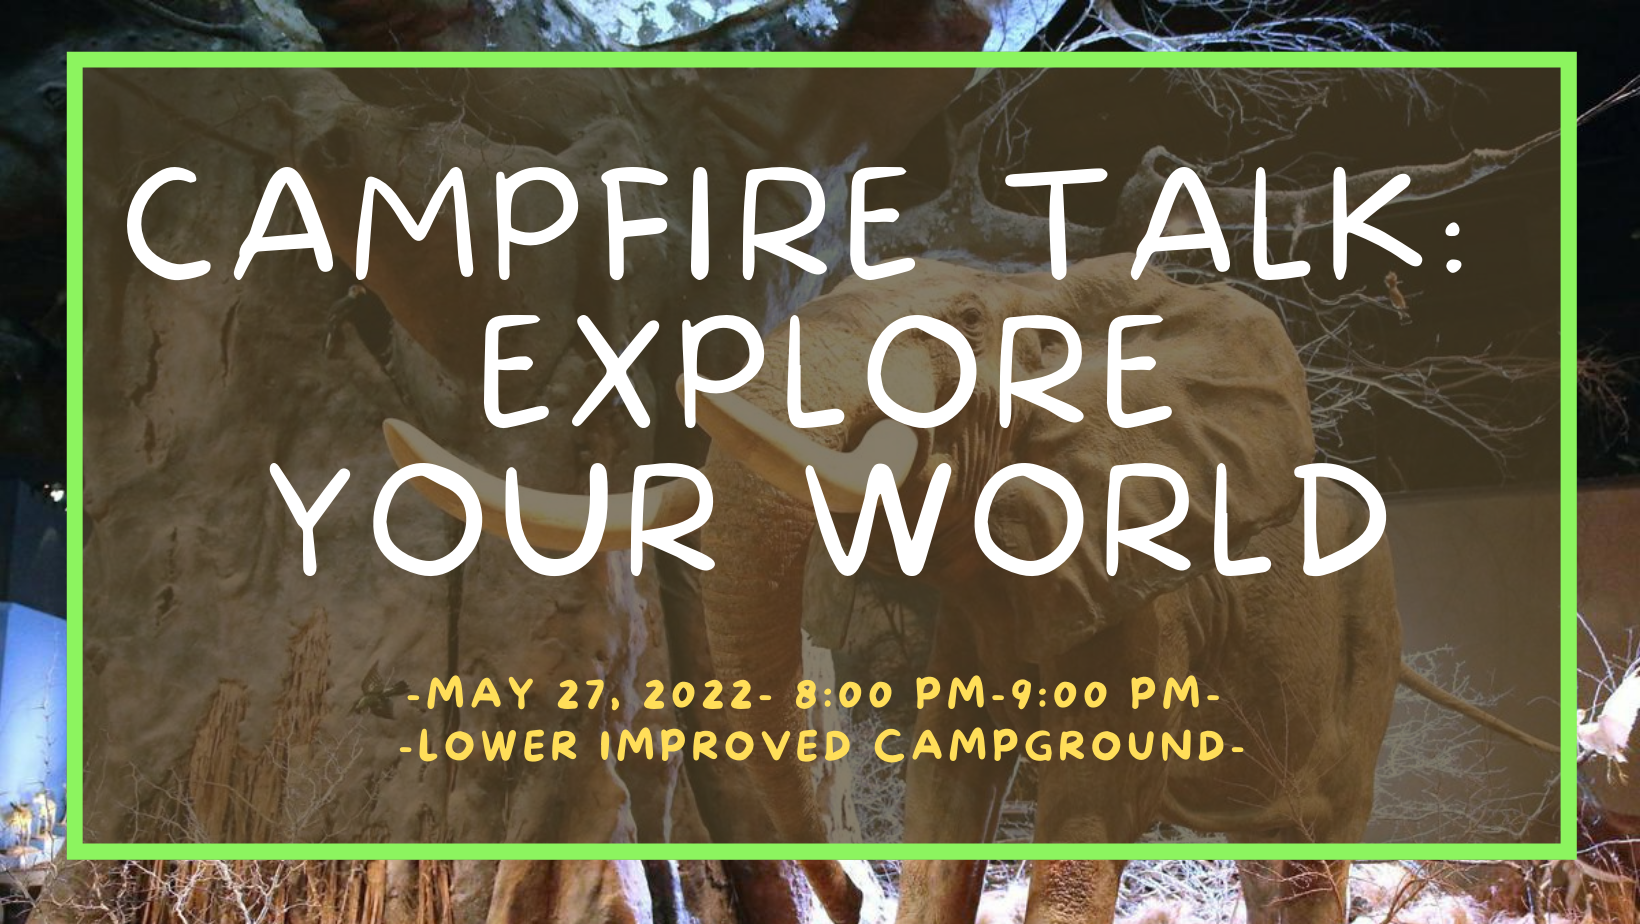 Campfire Talk: Explore Your World